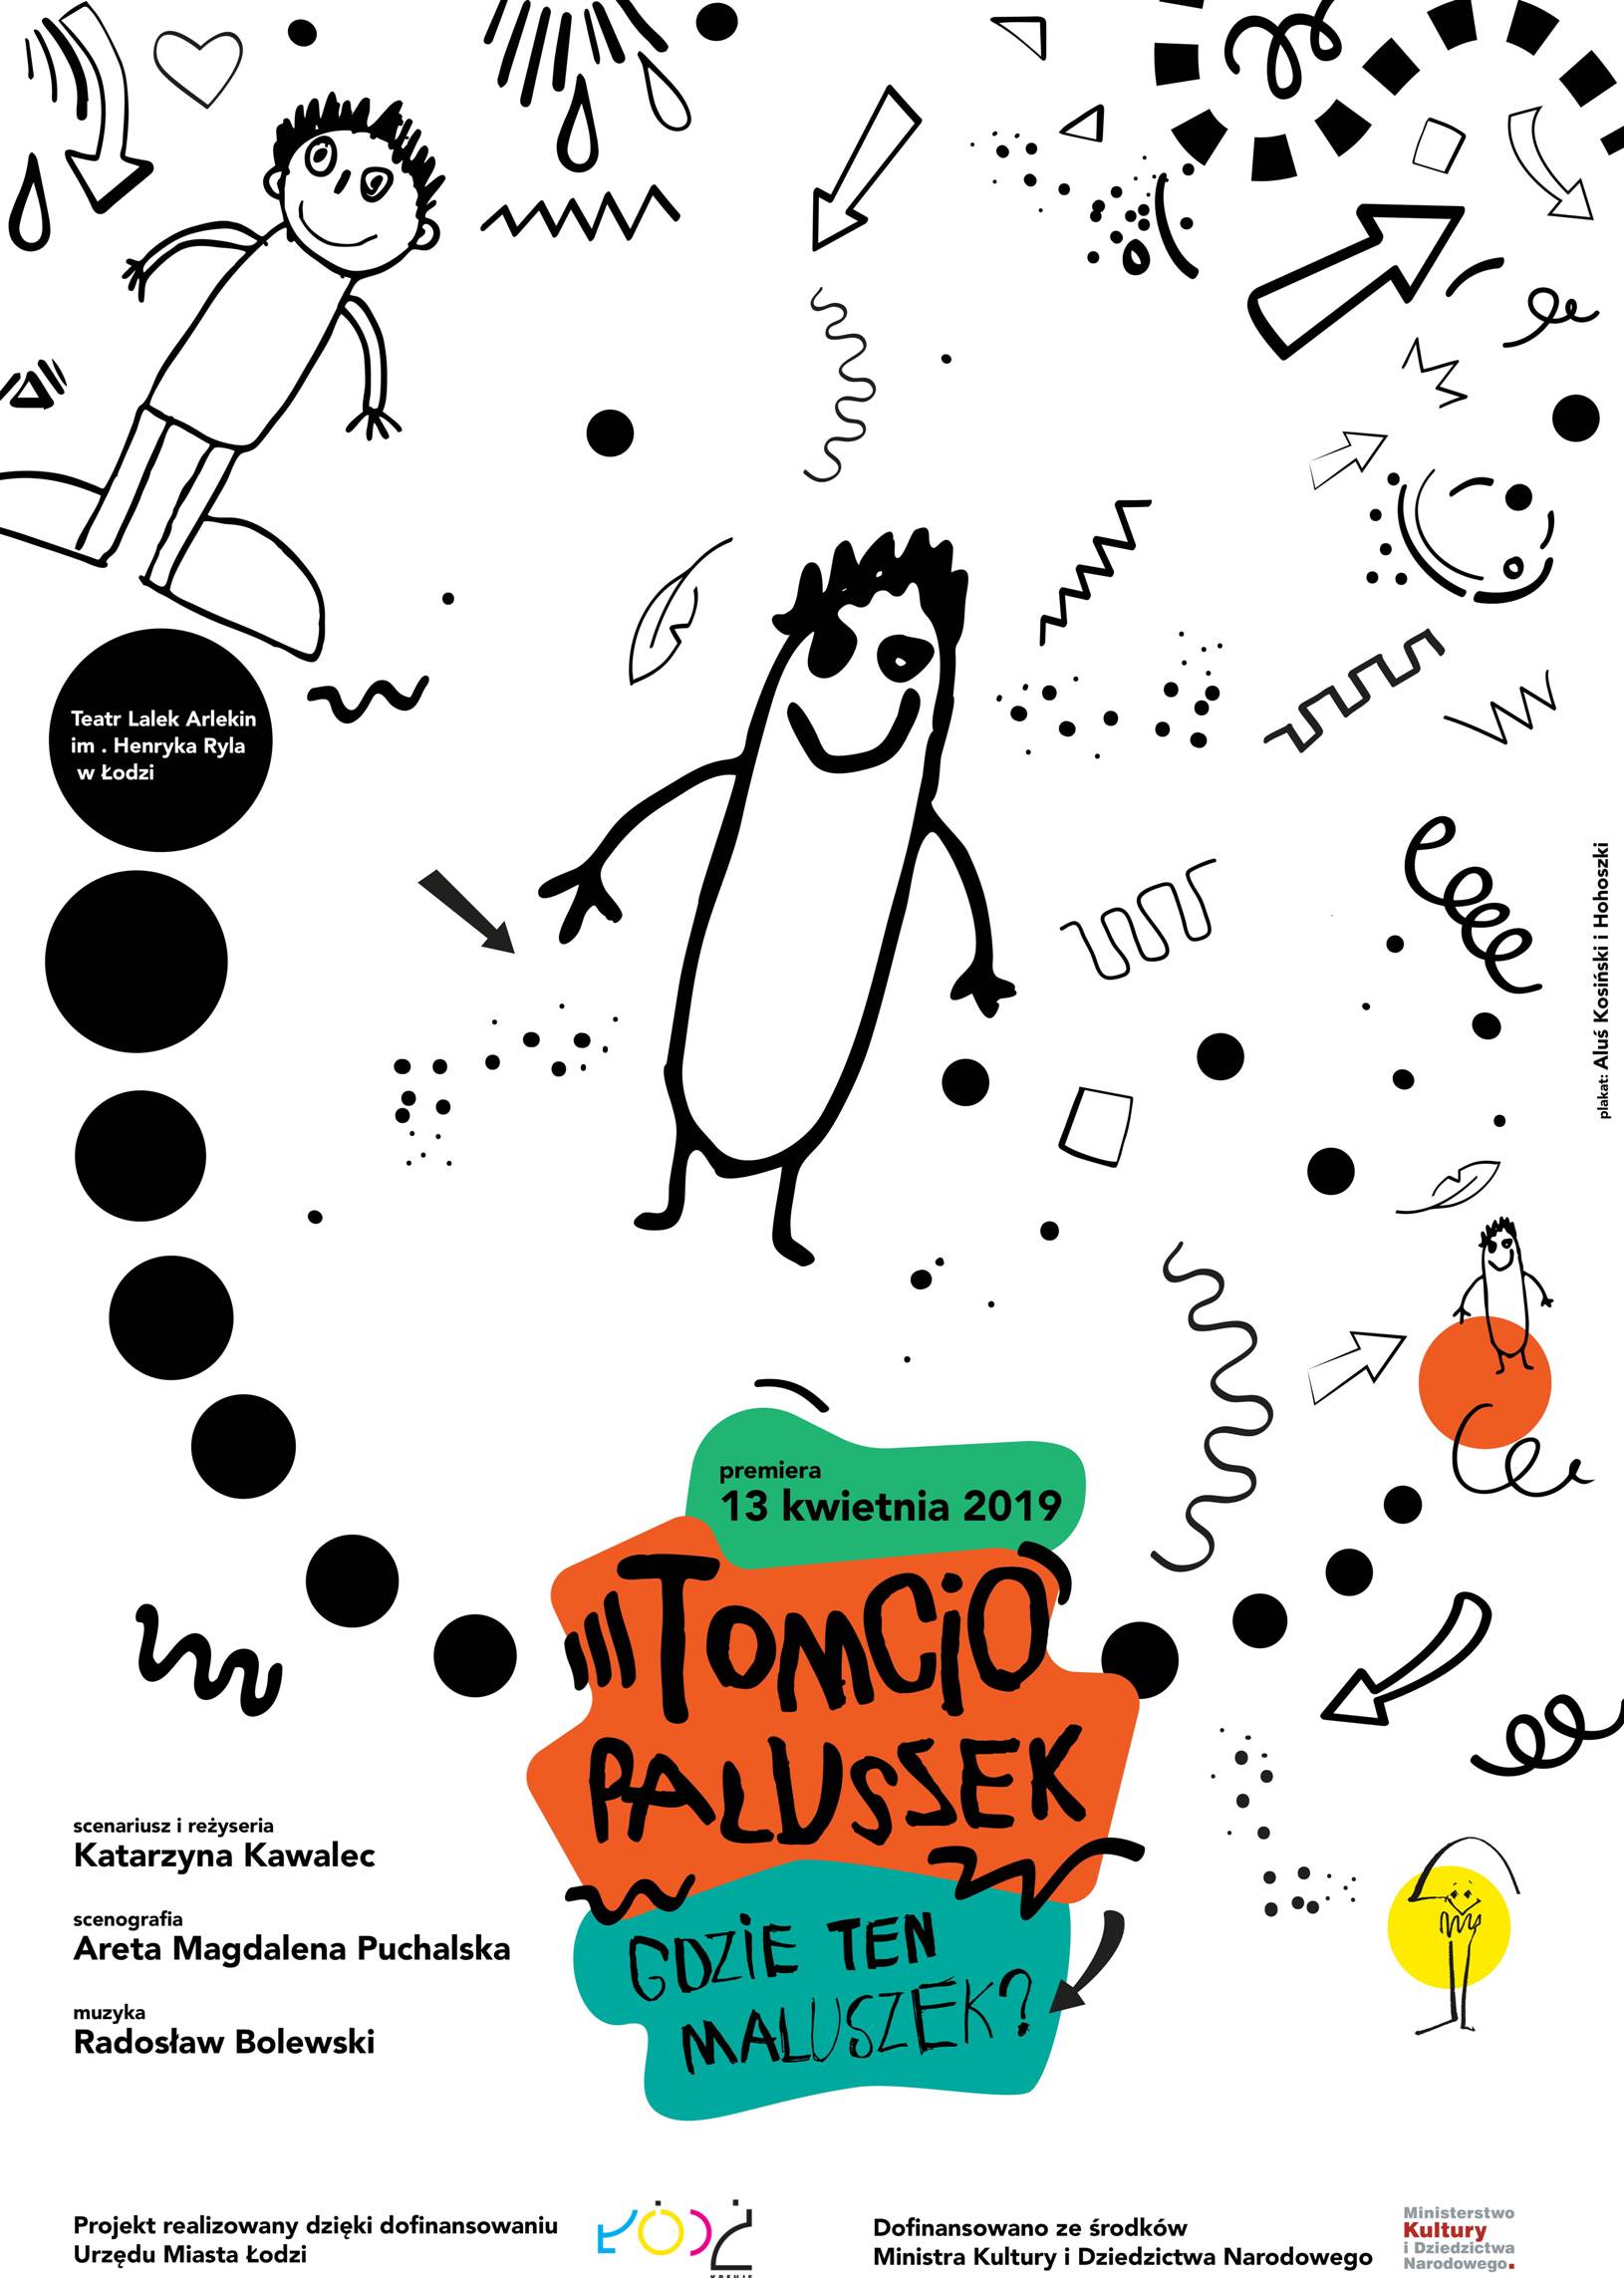 Tomcio Paluszek – gdzie ten maluszek. Premiera w Teatrze Lalek Arlekin